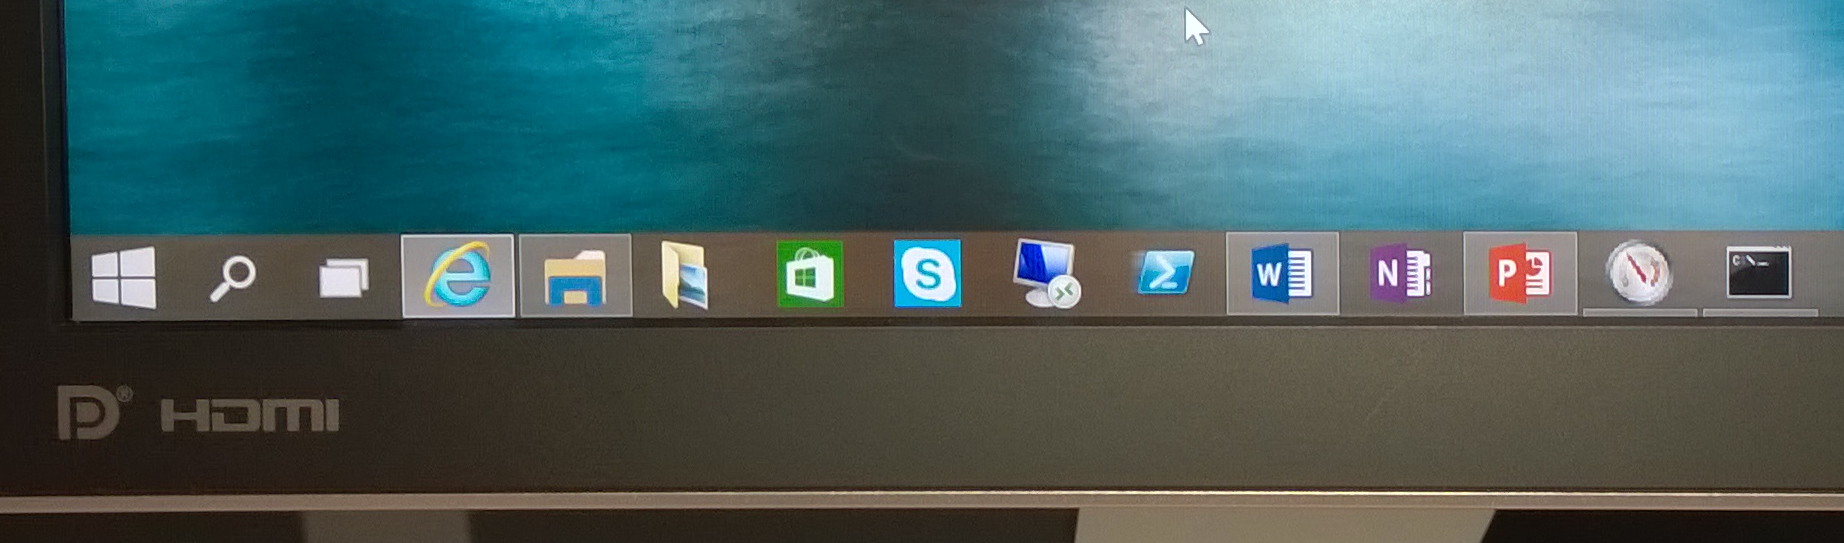 Microsoft Windows 10 Preview Build 9879 Tweaks Toolbar Adds Gestures